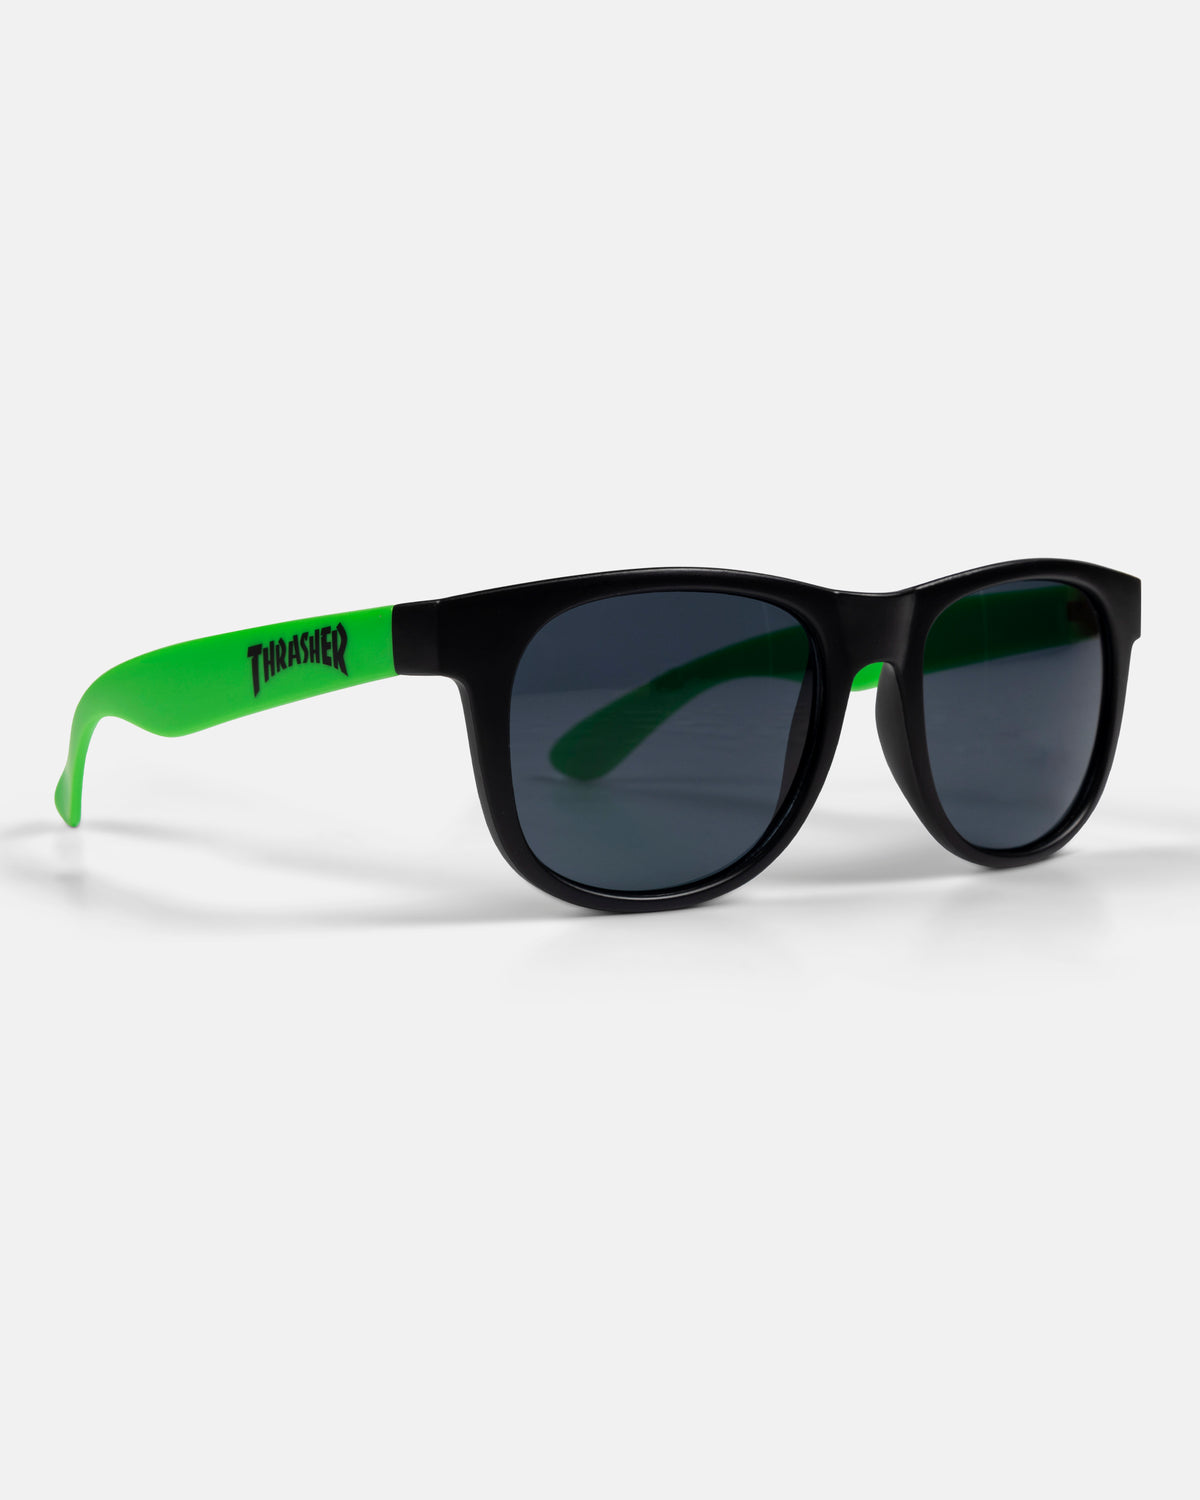 Neon Green Thrasher Sunglasses Thrasher Magazine 8932